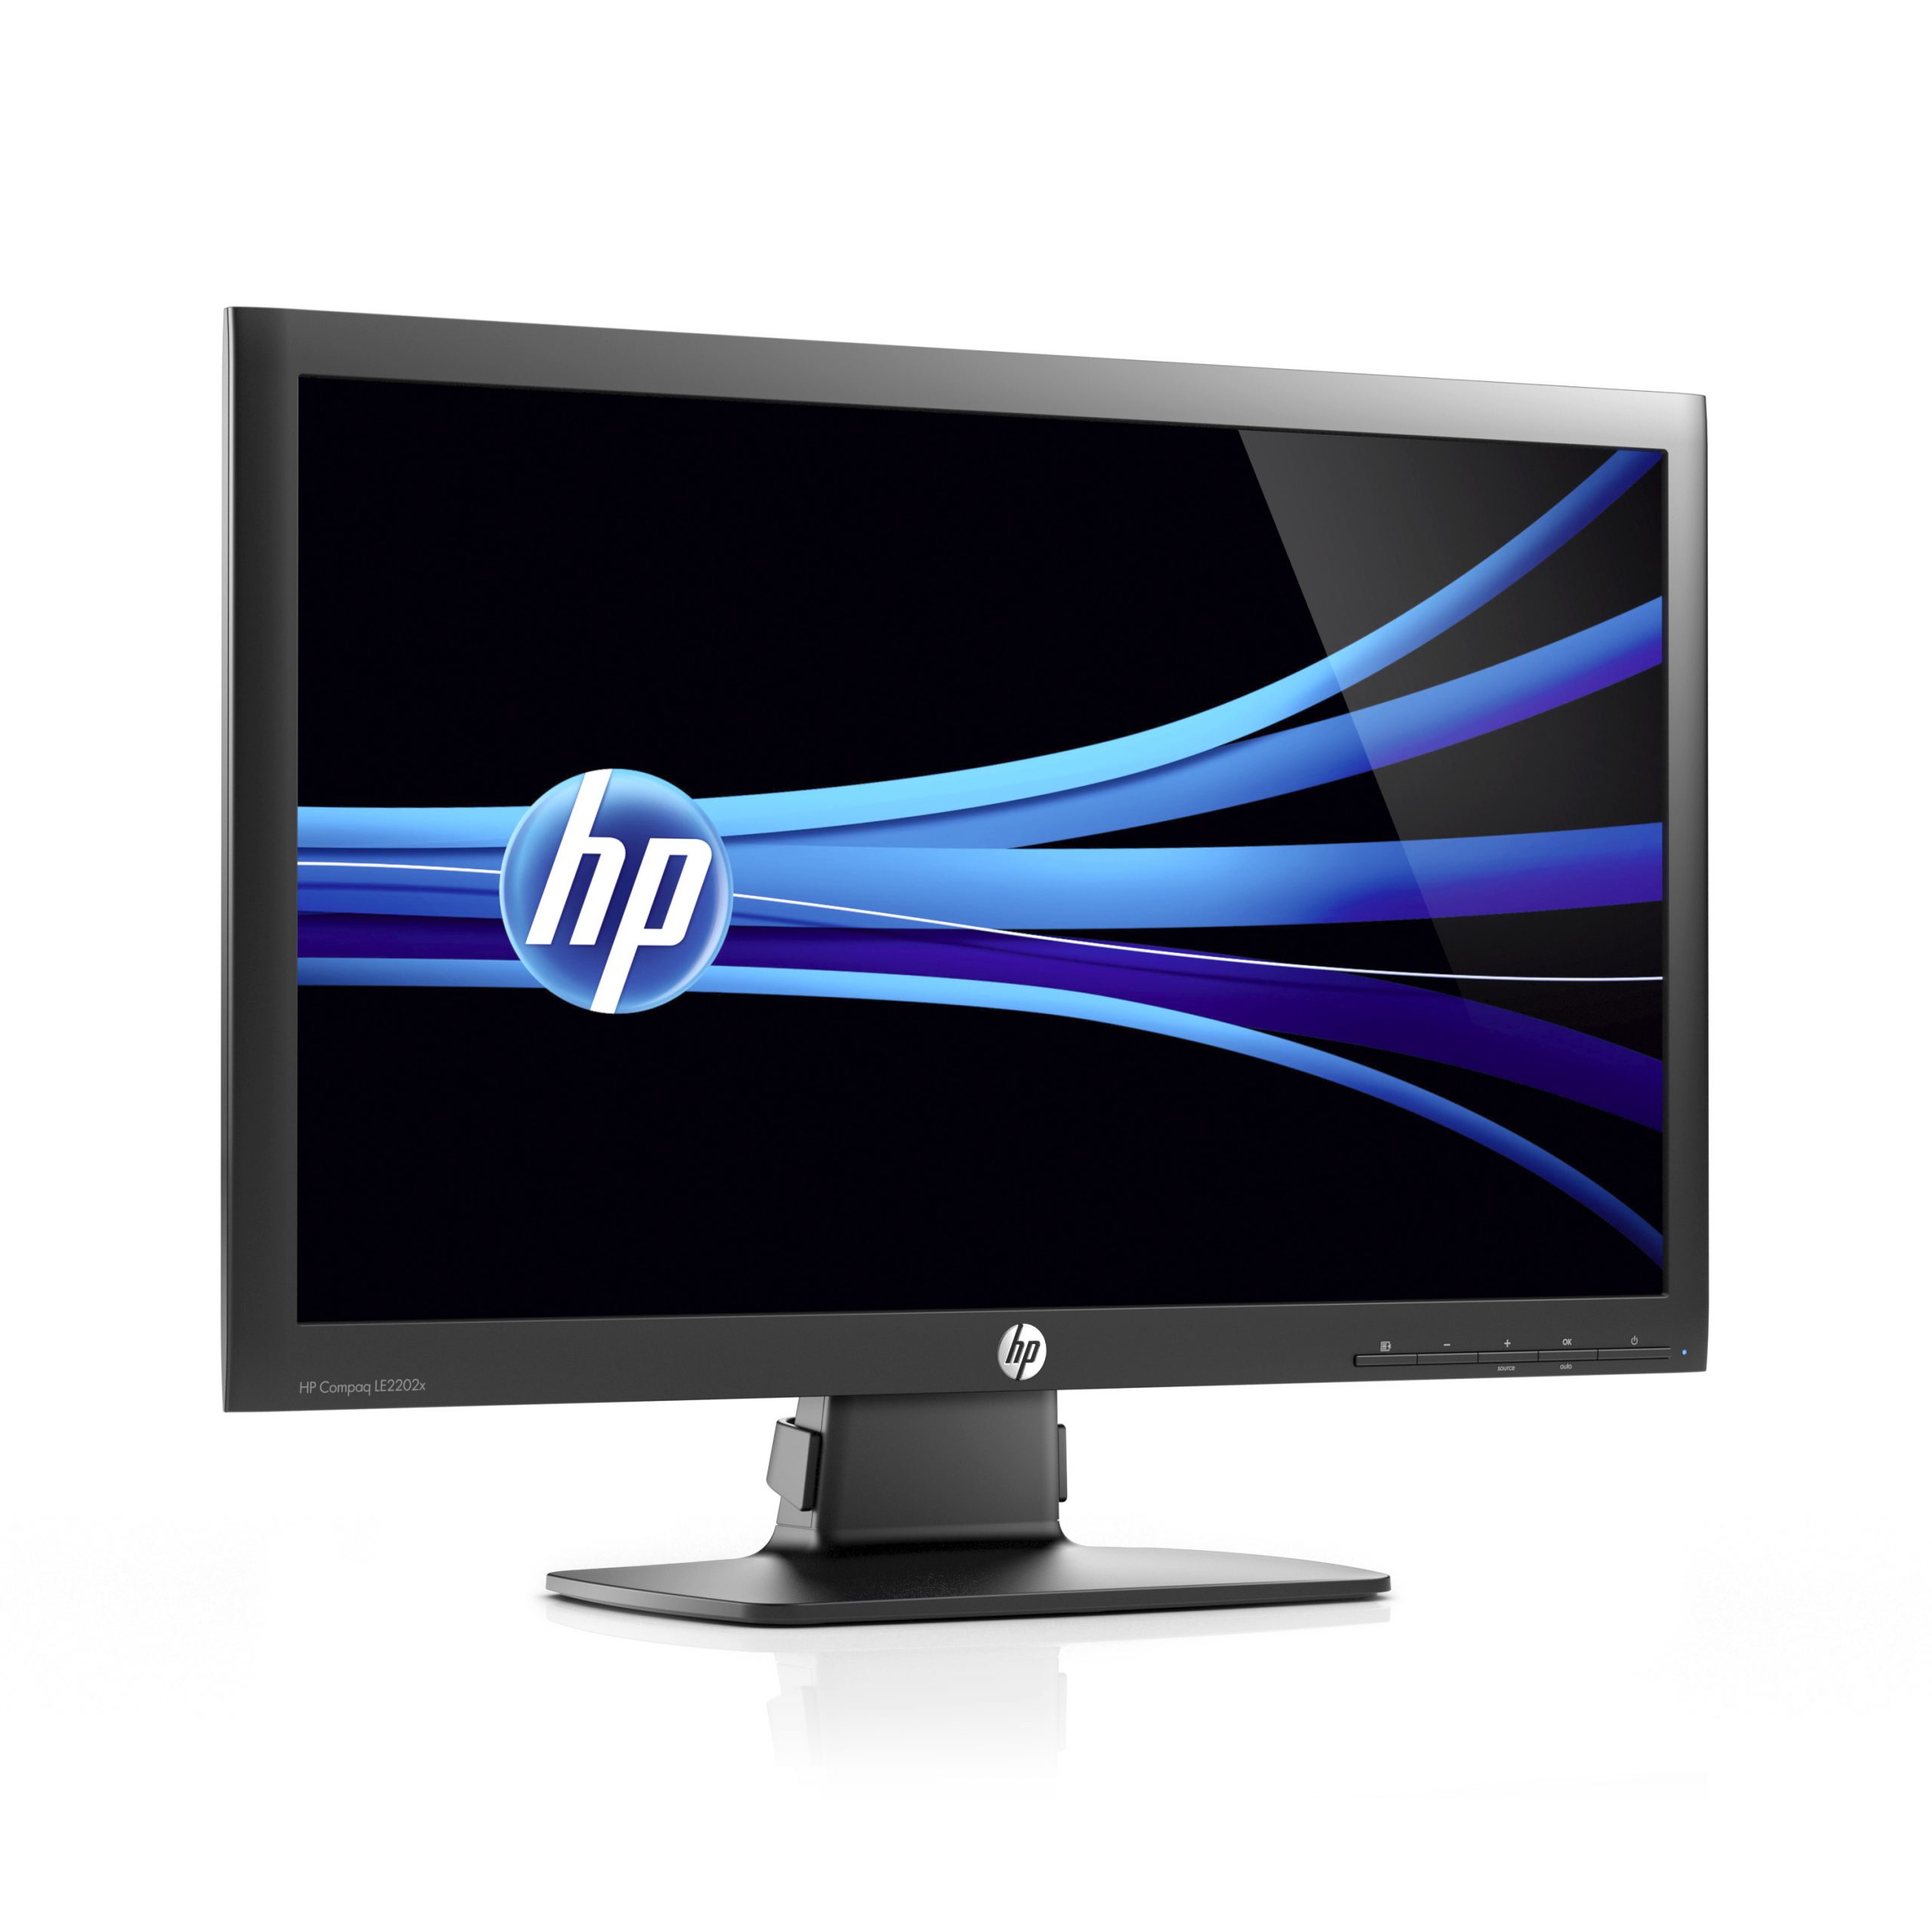 HP Compaq LE2202x Monitor LCD 22″ 1920x1080 Pixel FullHD 16:9 Tempo di risposta 5ms Contrasto 1000:1 Luminosità 250 cd/m²